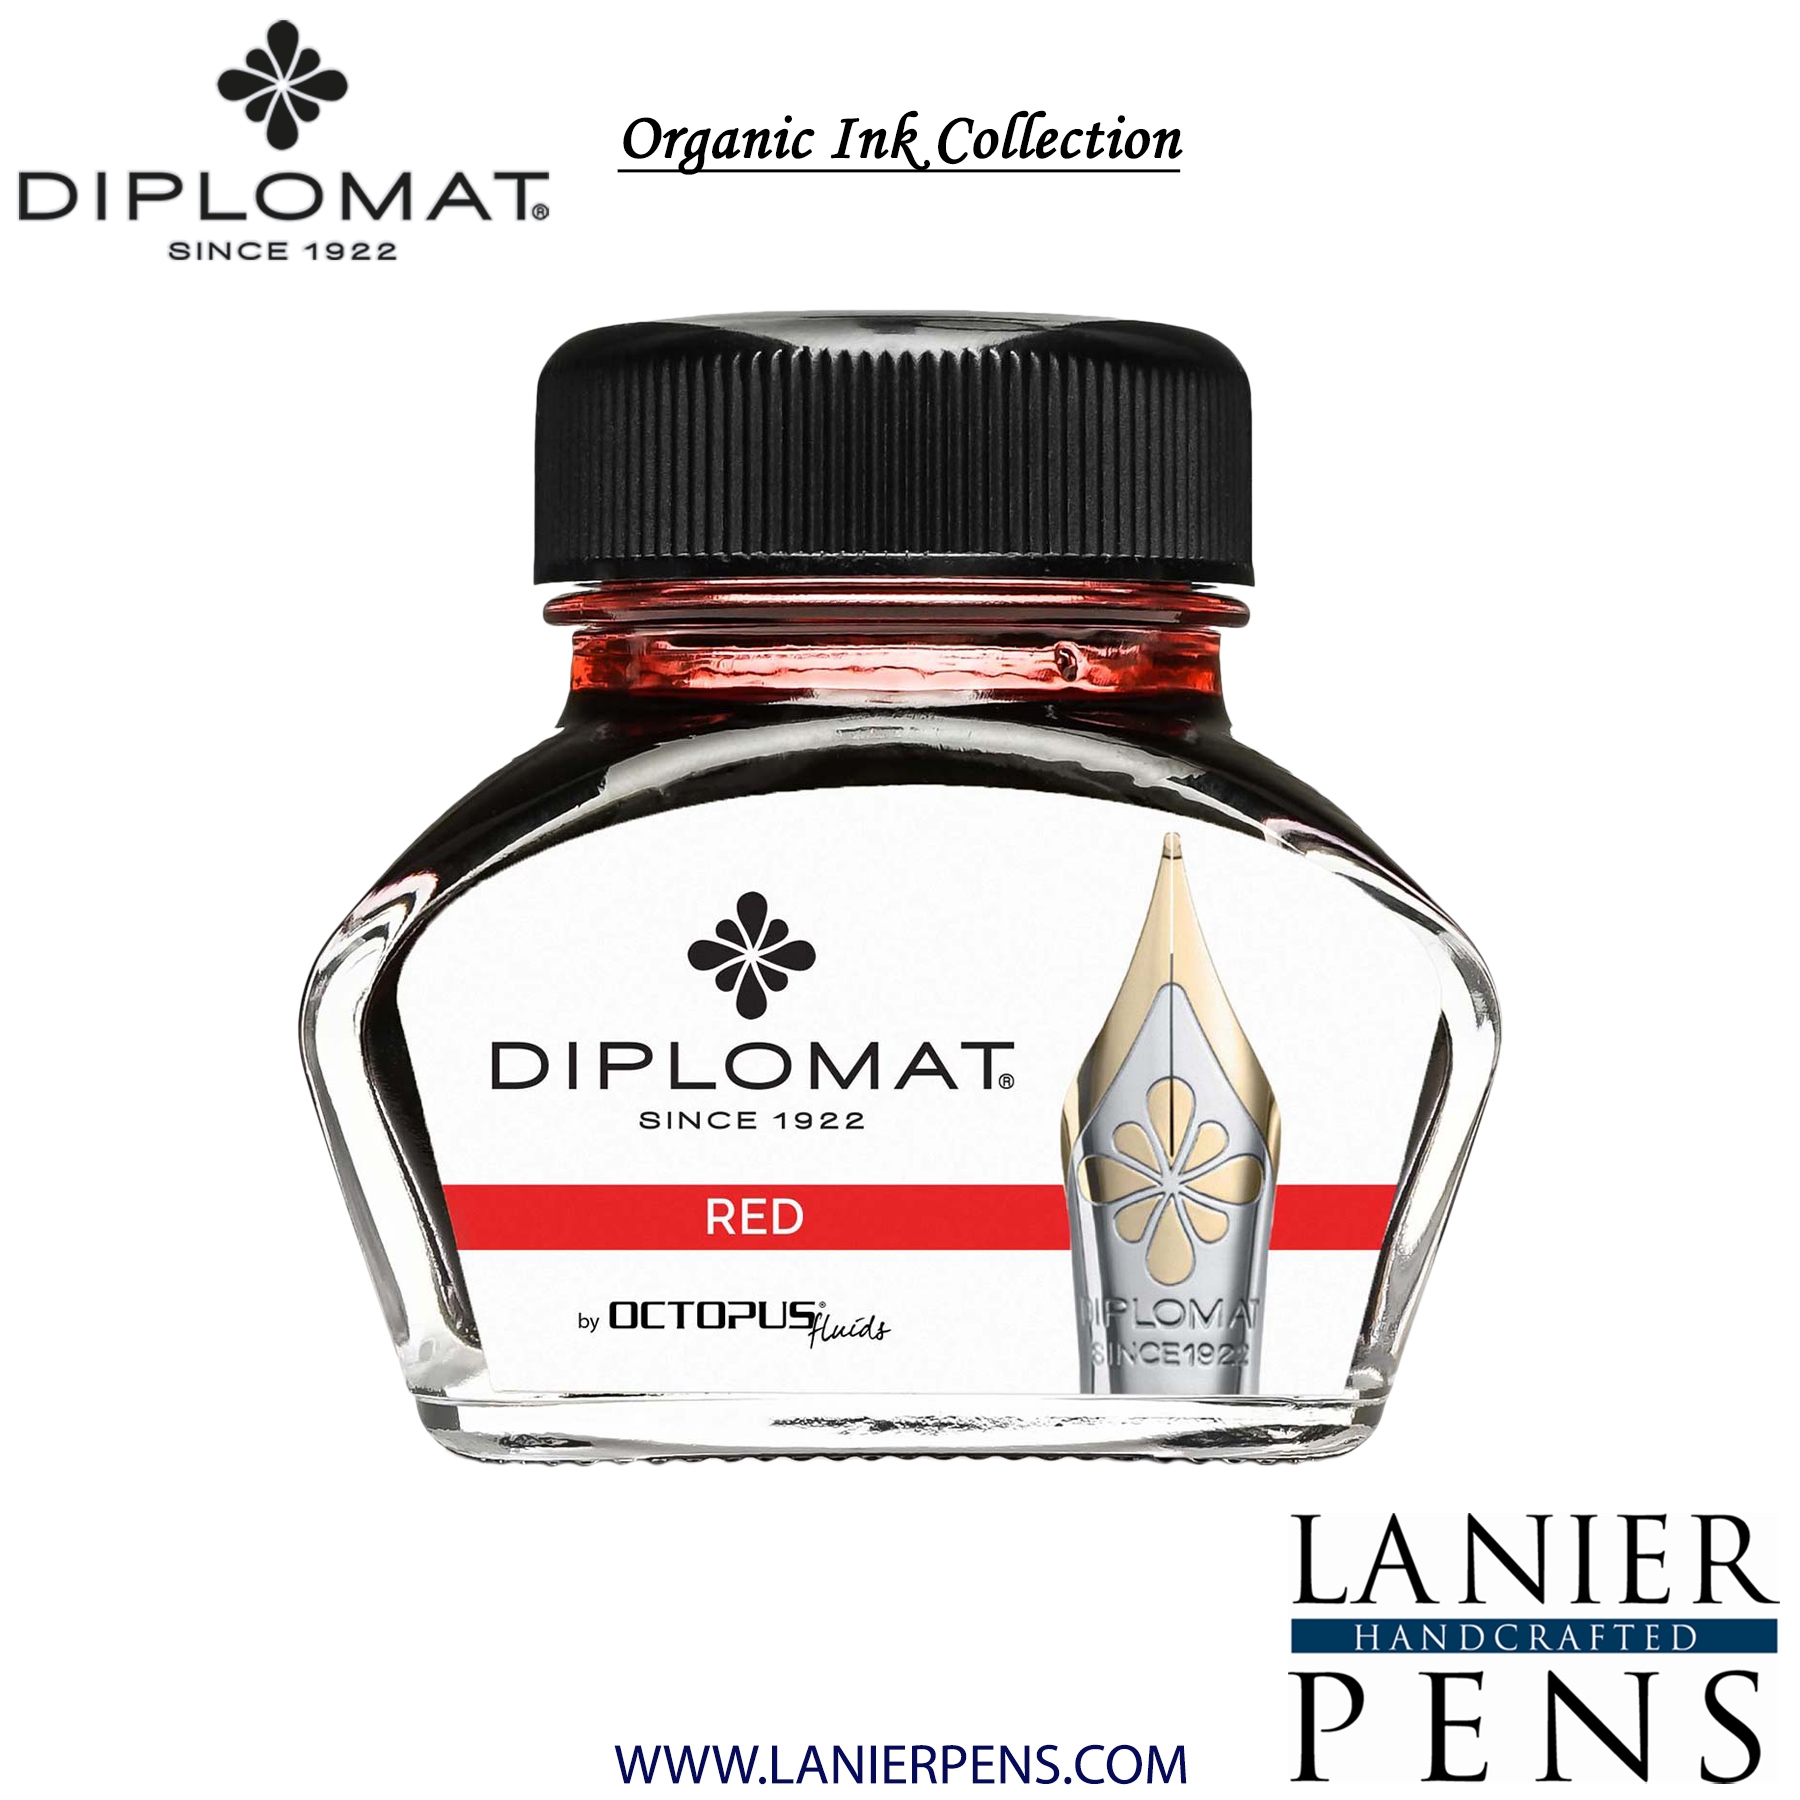 Diplomat Red Ink Bottle, 30ml by Lanier Pens, lanierpens, lanierpens.com, wndpens, WOOD N DREAMS, Pensbylanier